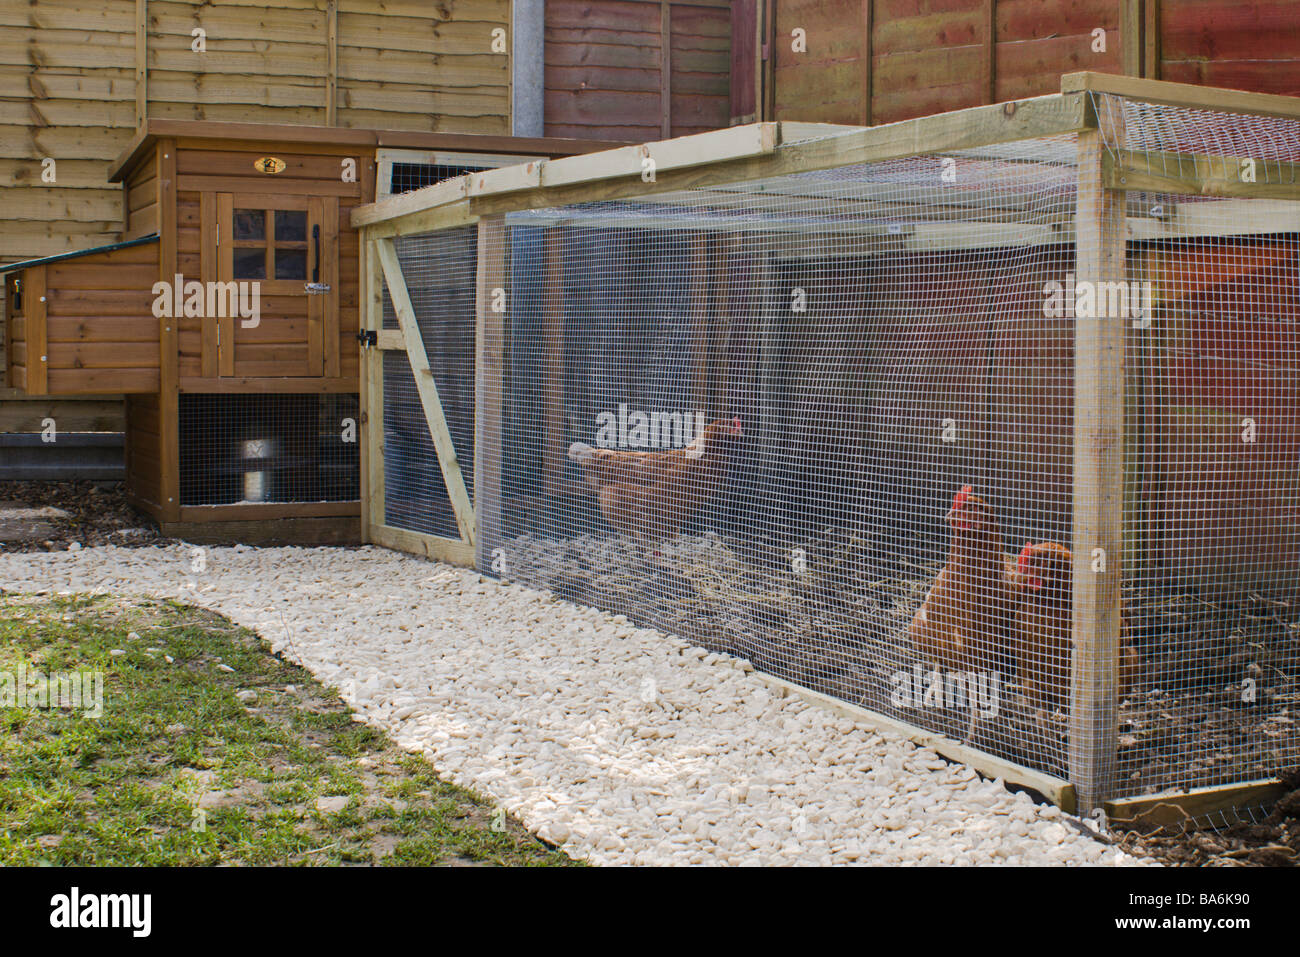 Las gallinas en un gallinero en un jardín urbano Foto de stock